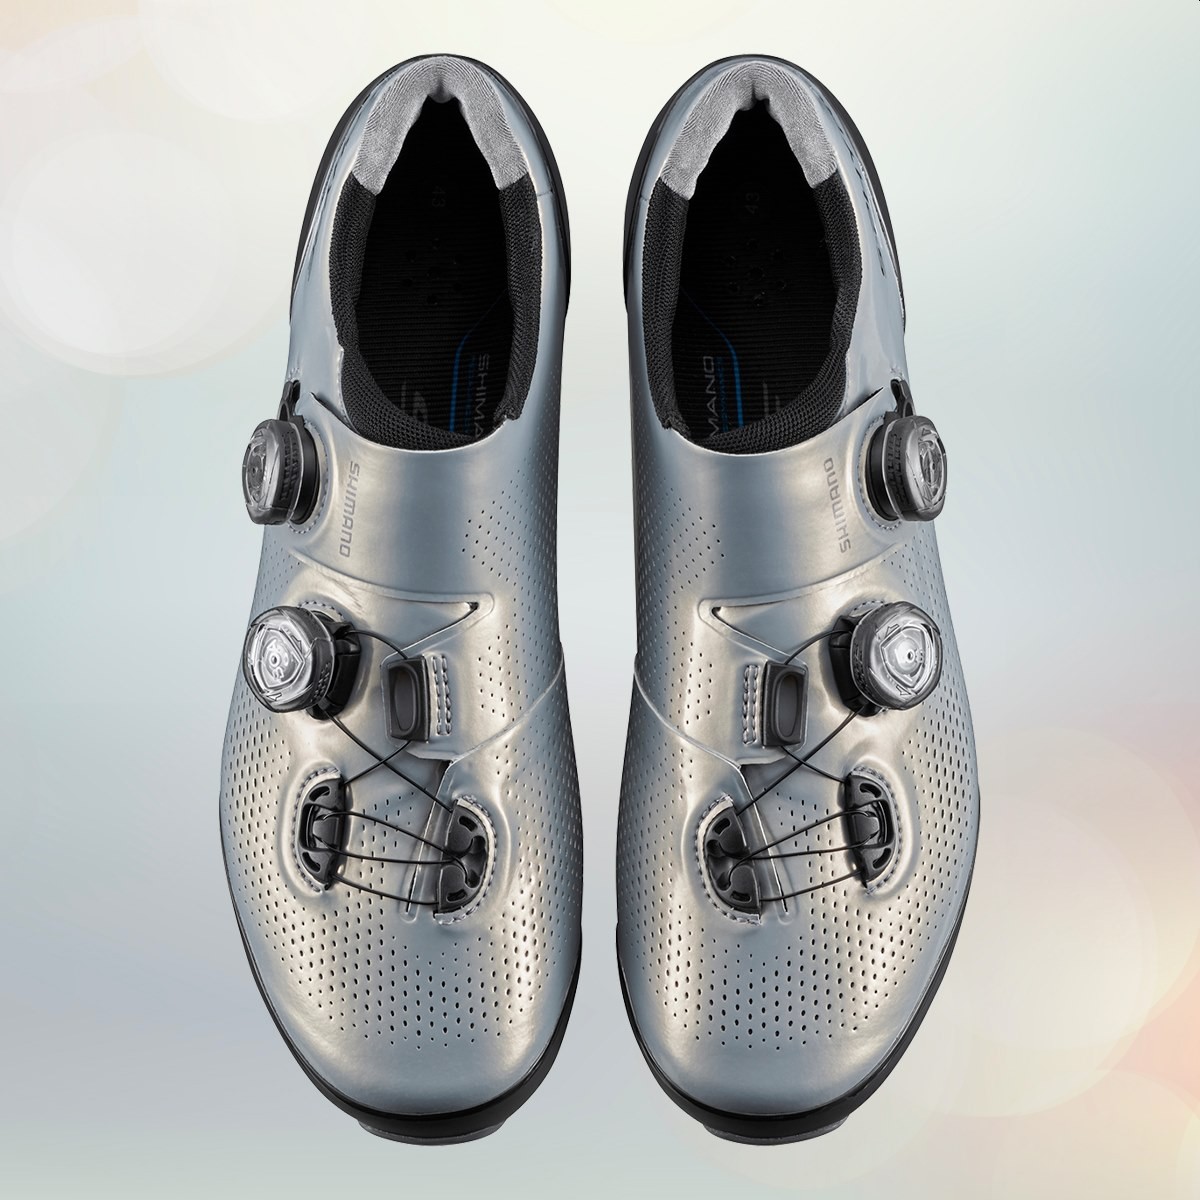 Las zapatillas Shimano S-Phyre estrenan un espectacular acabado